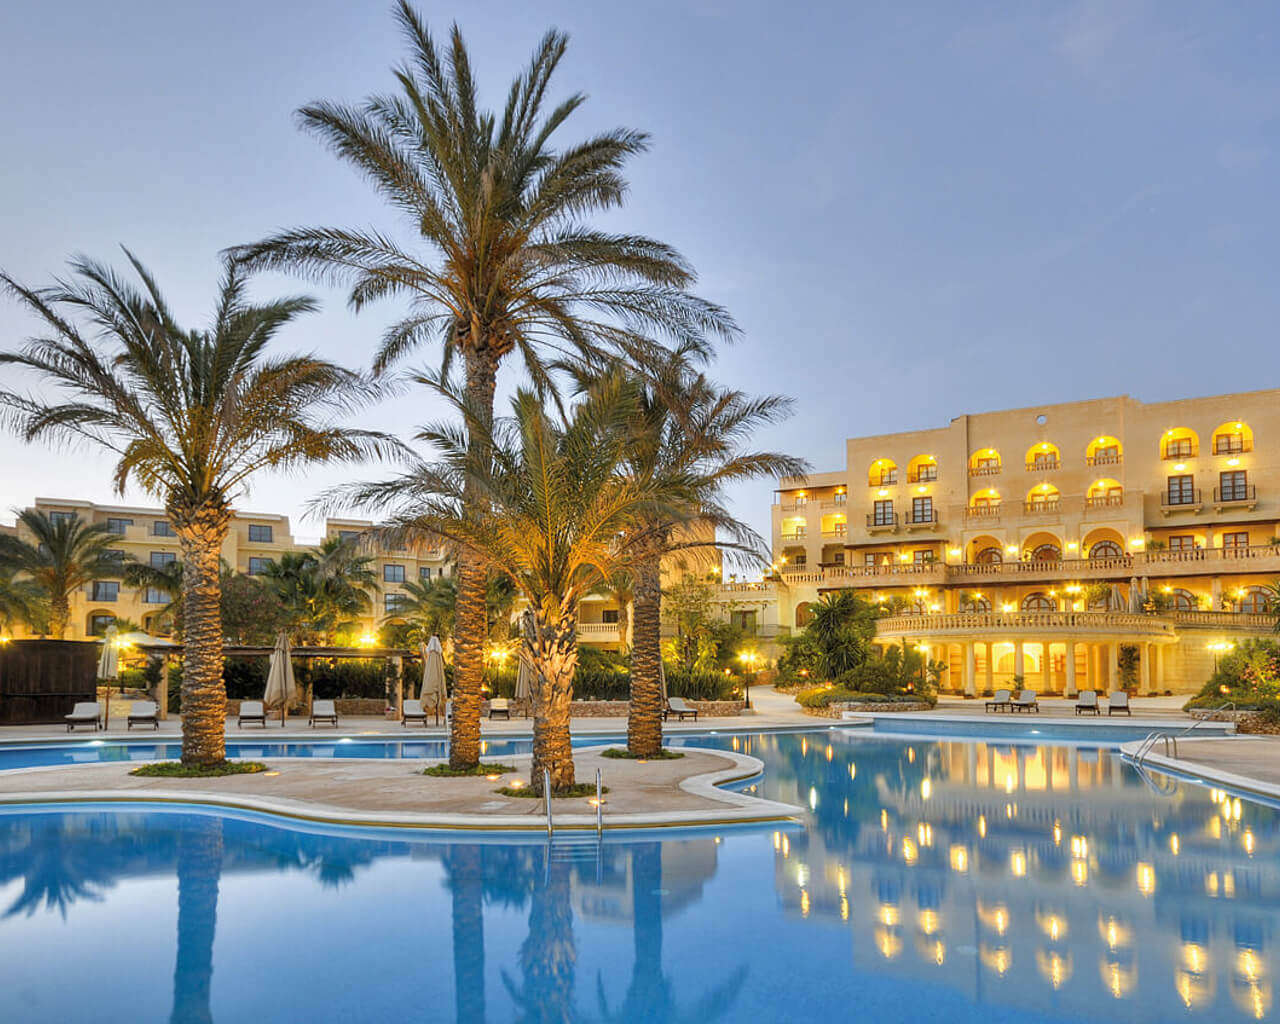 Kempinski hôtel, île de Gozo, San Lawrenz, Malte